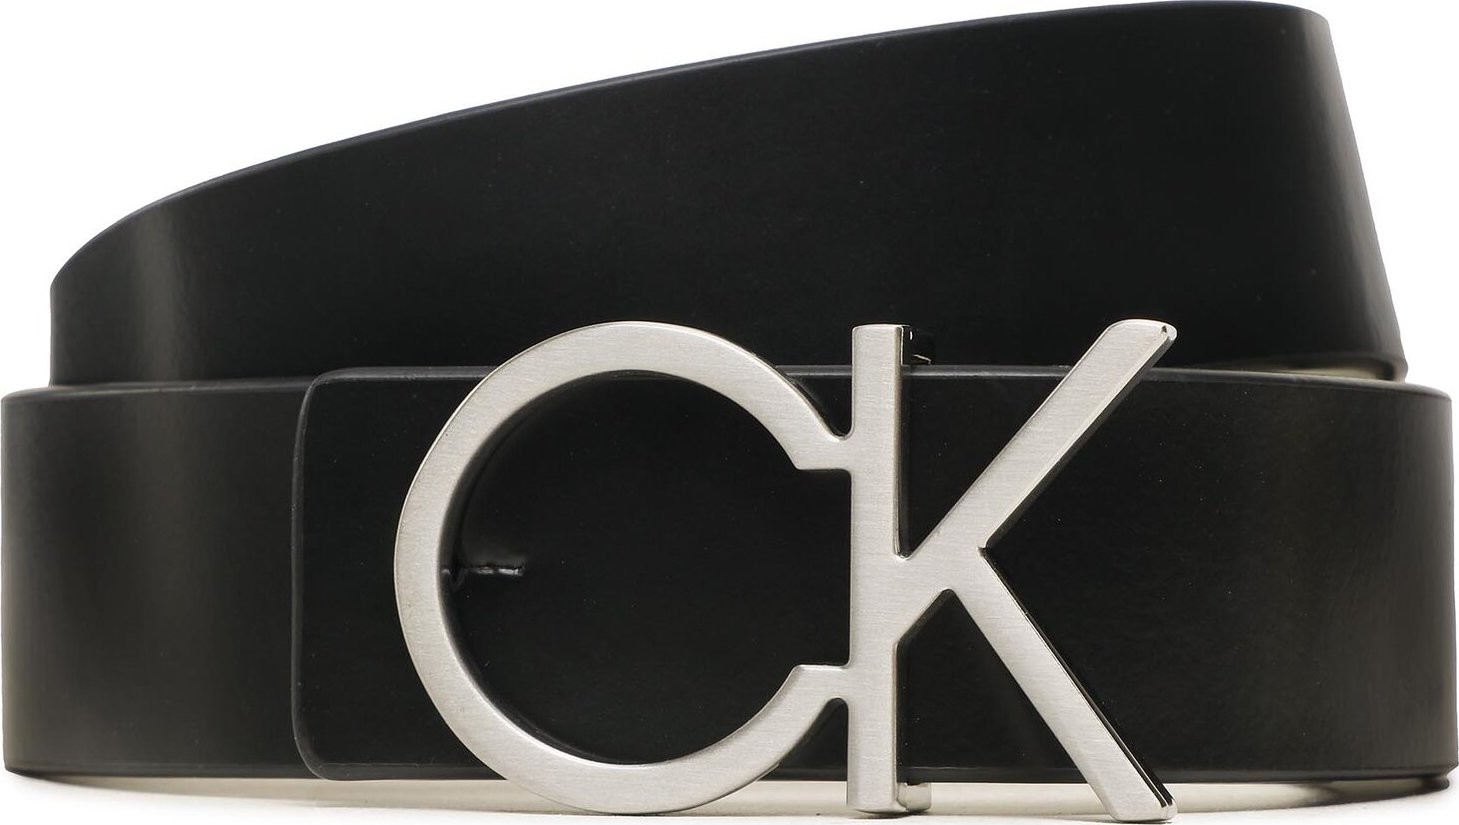 Dámský pásek Calvin Klein Re-Lock Ck Rev Belt 30Mm K60K610156 0GM